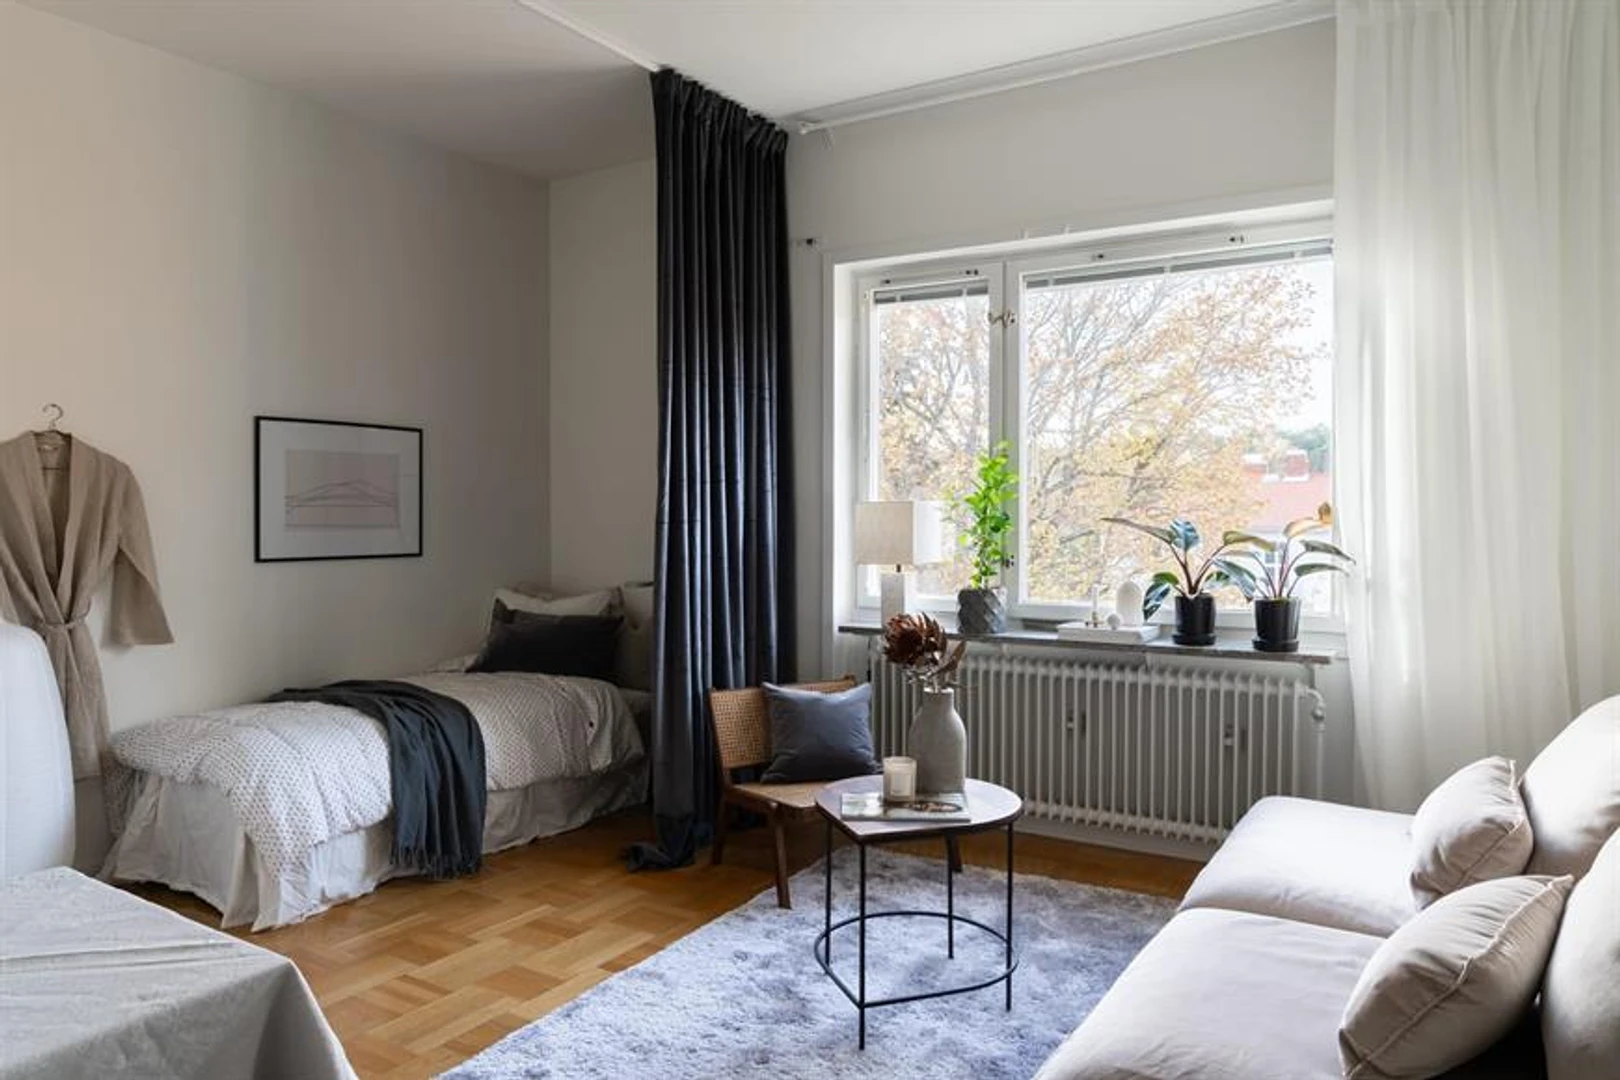 Pokój do wynajęcia we wspólnym mieszkaniu w Uppsala